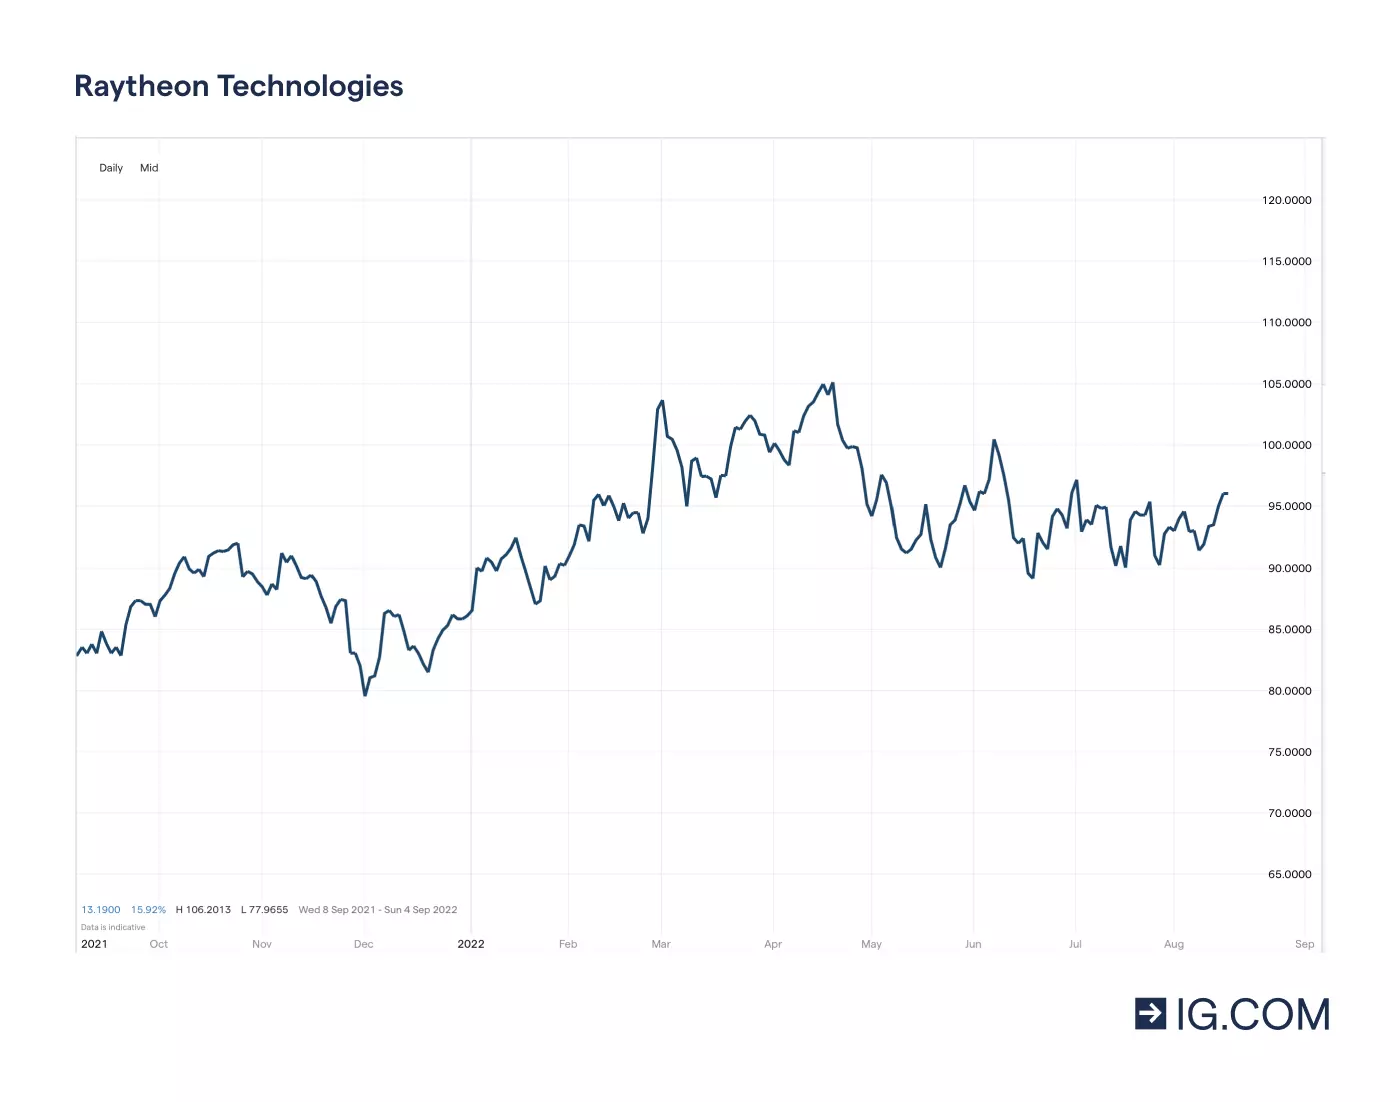 Graf som visar Raytheon Technologies-aktiens olika prisnivåer på en ettårig tidslinje – bland annat en bottennotering på 87,02 i november 2021 innan den steg till en toppnotering på 106,02 i april 2022 – samt aktiekursen på 91,88 i maj 2022